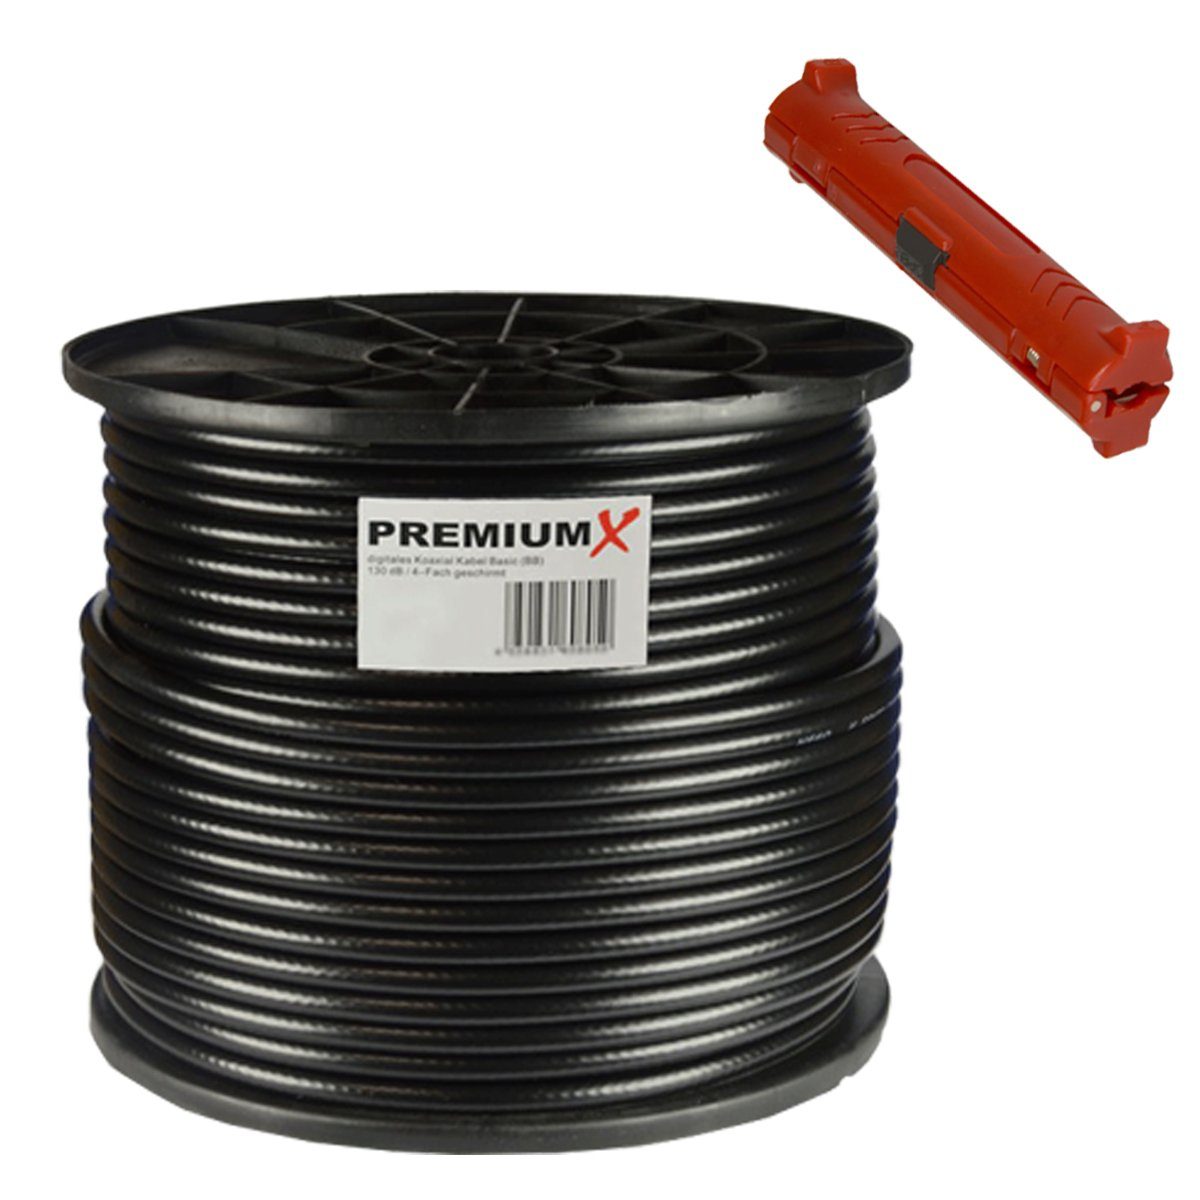 PremiumX 100m BASIC Koaxialkabel schwarz 135dB SAT Kabel Entmanteler SAT-Kabel